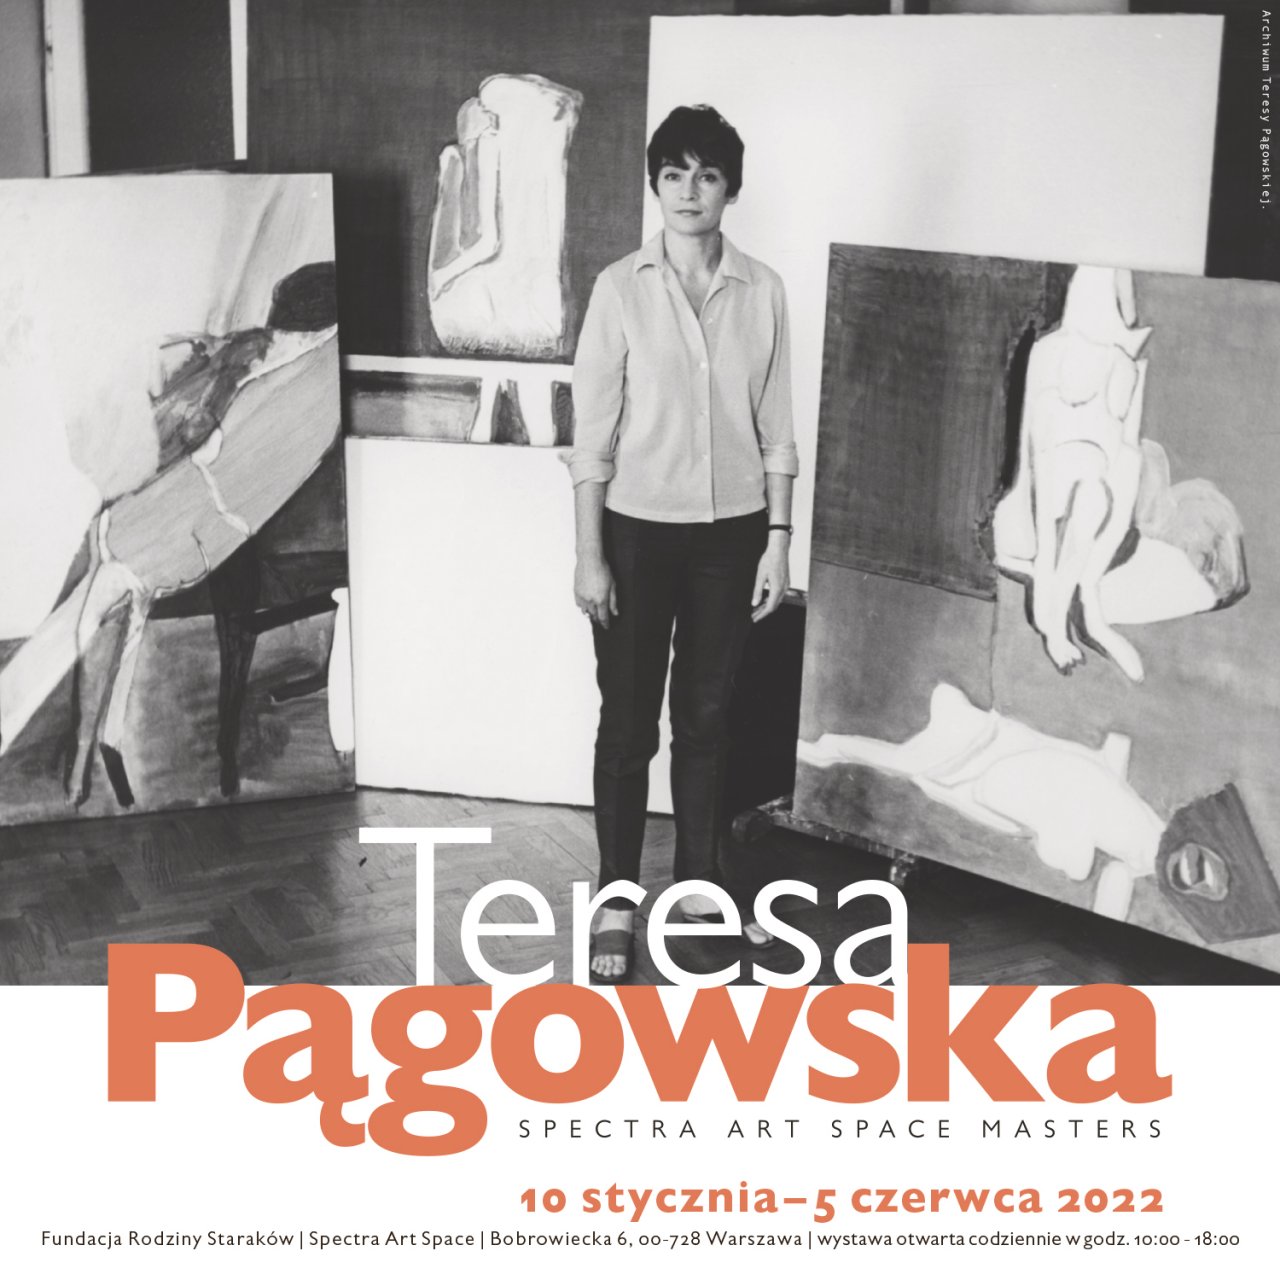 Teresa Pągowska | Spectra Art Space MASTERS
